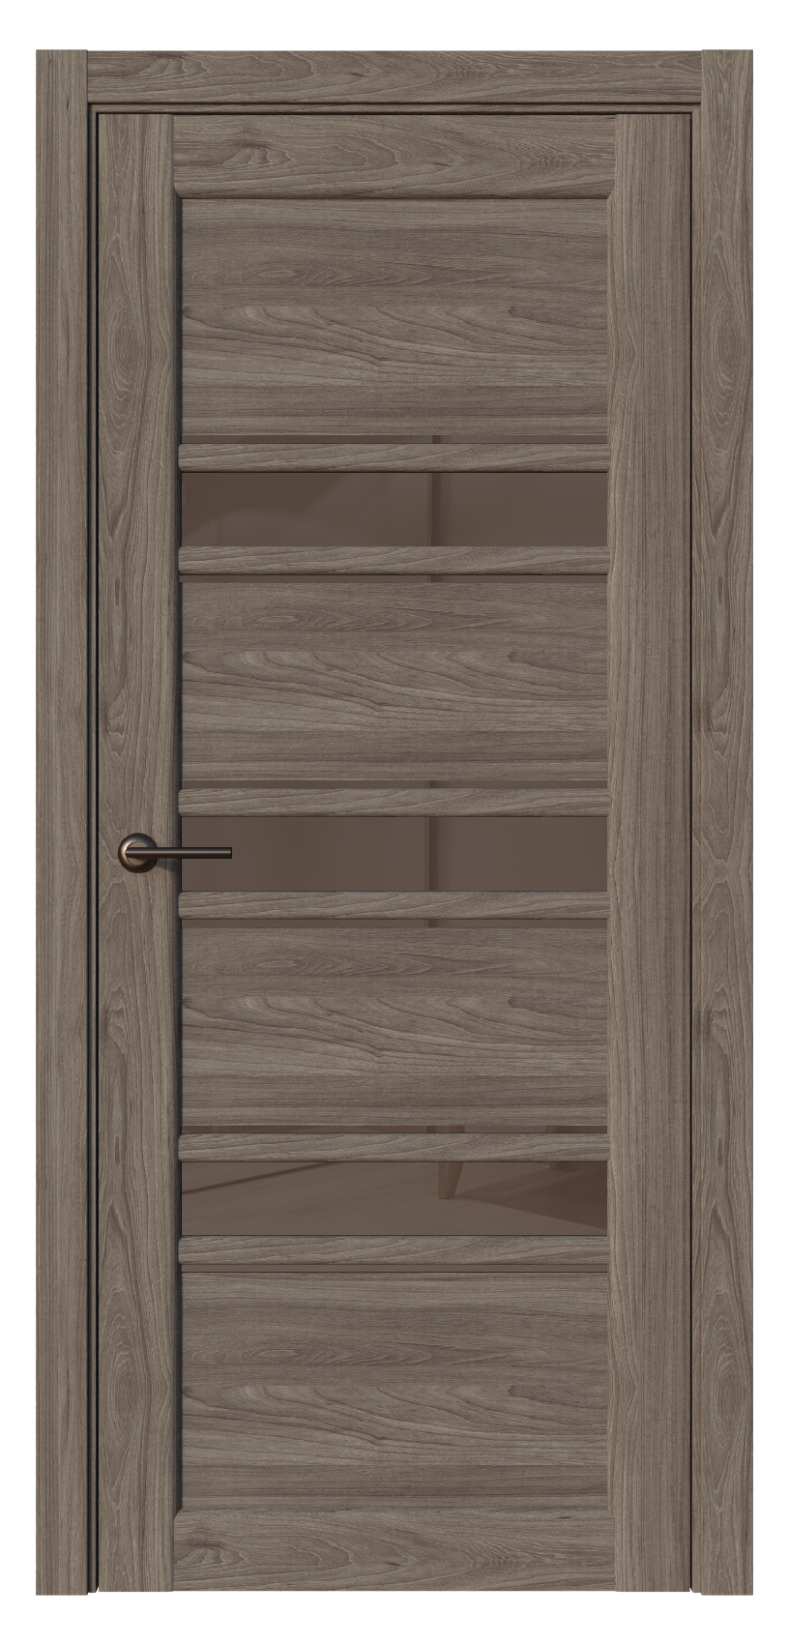 Questdoors Межкомнатная дверь QX43, арт. 17591 - фото №1